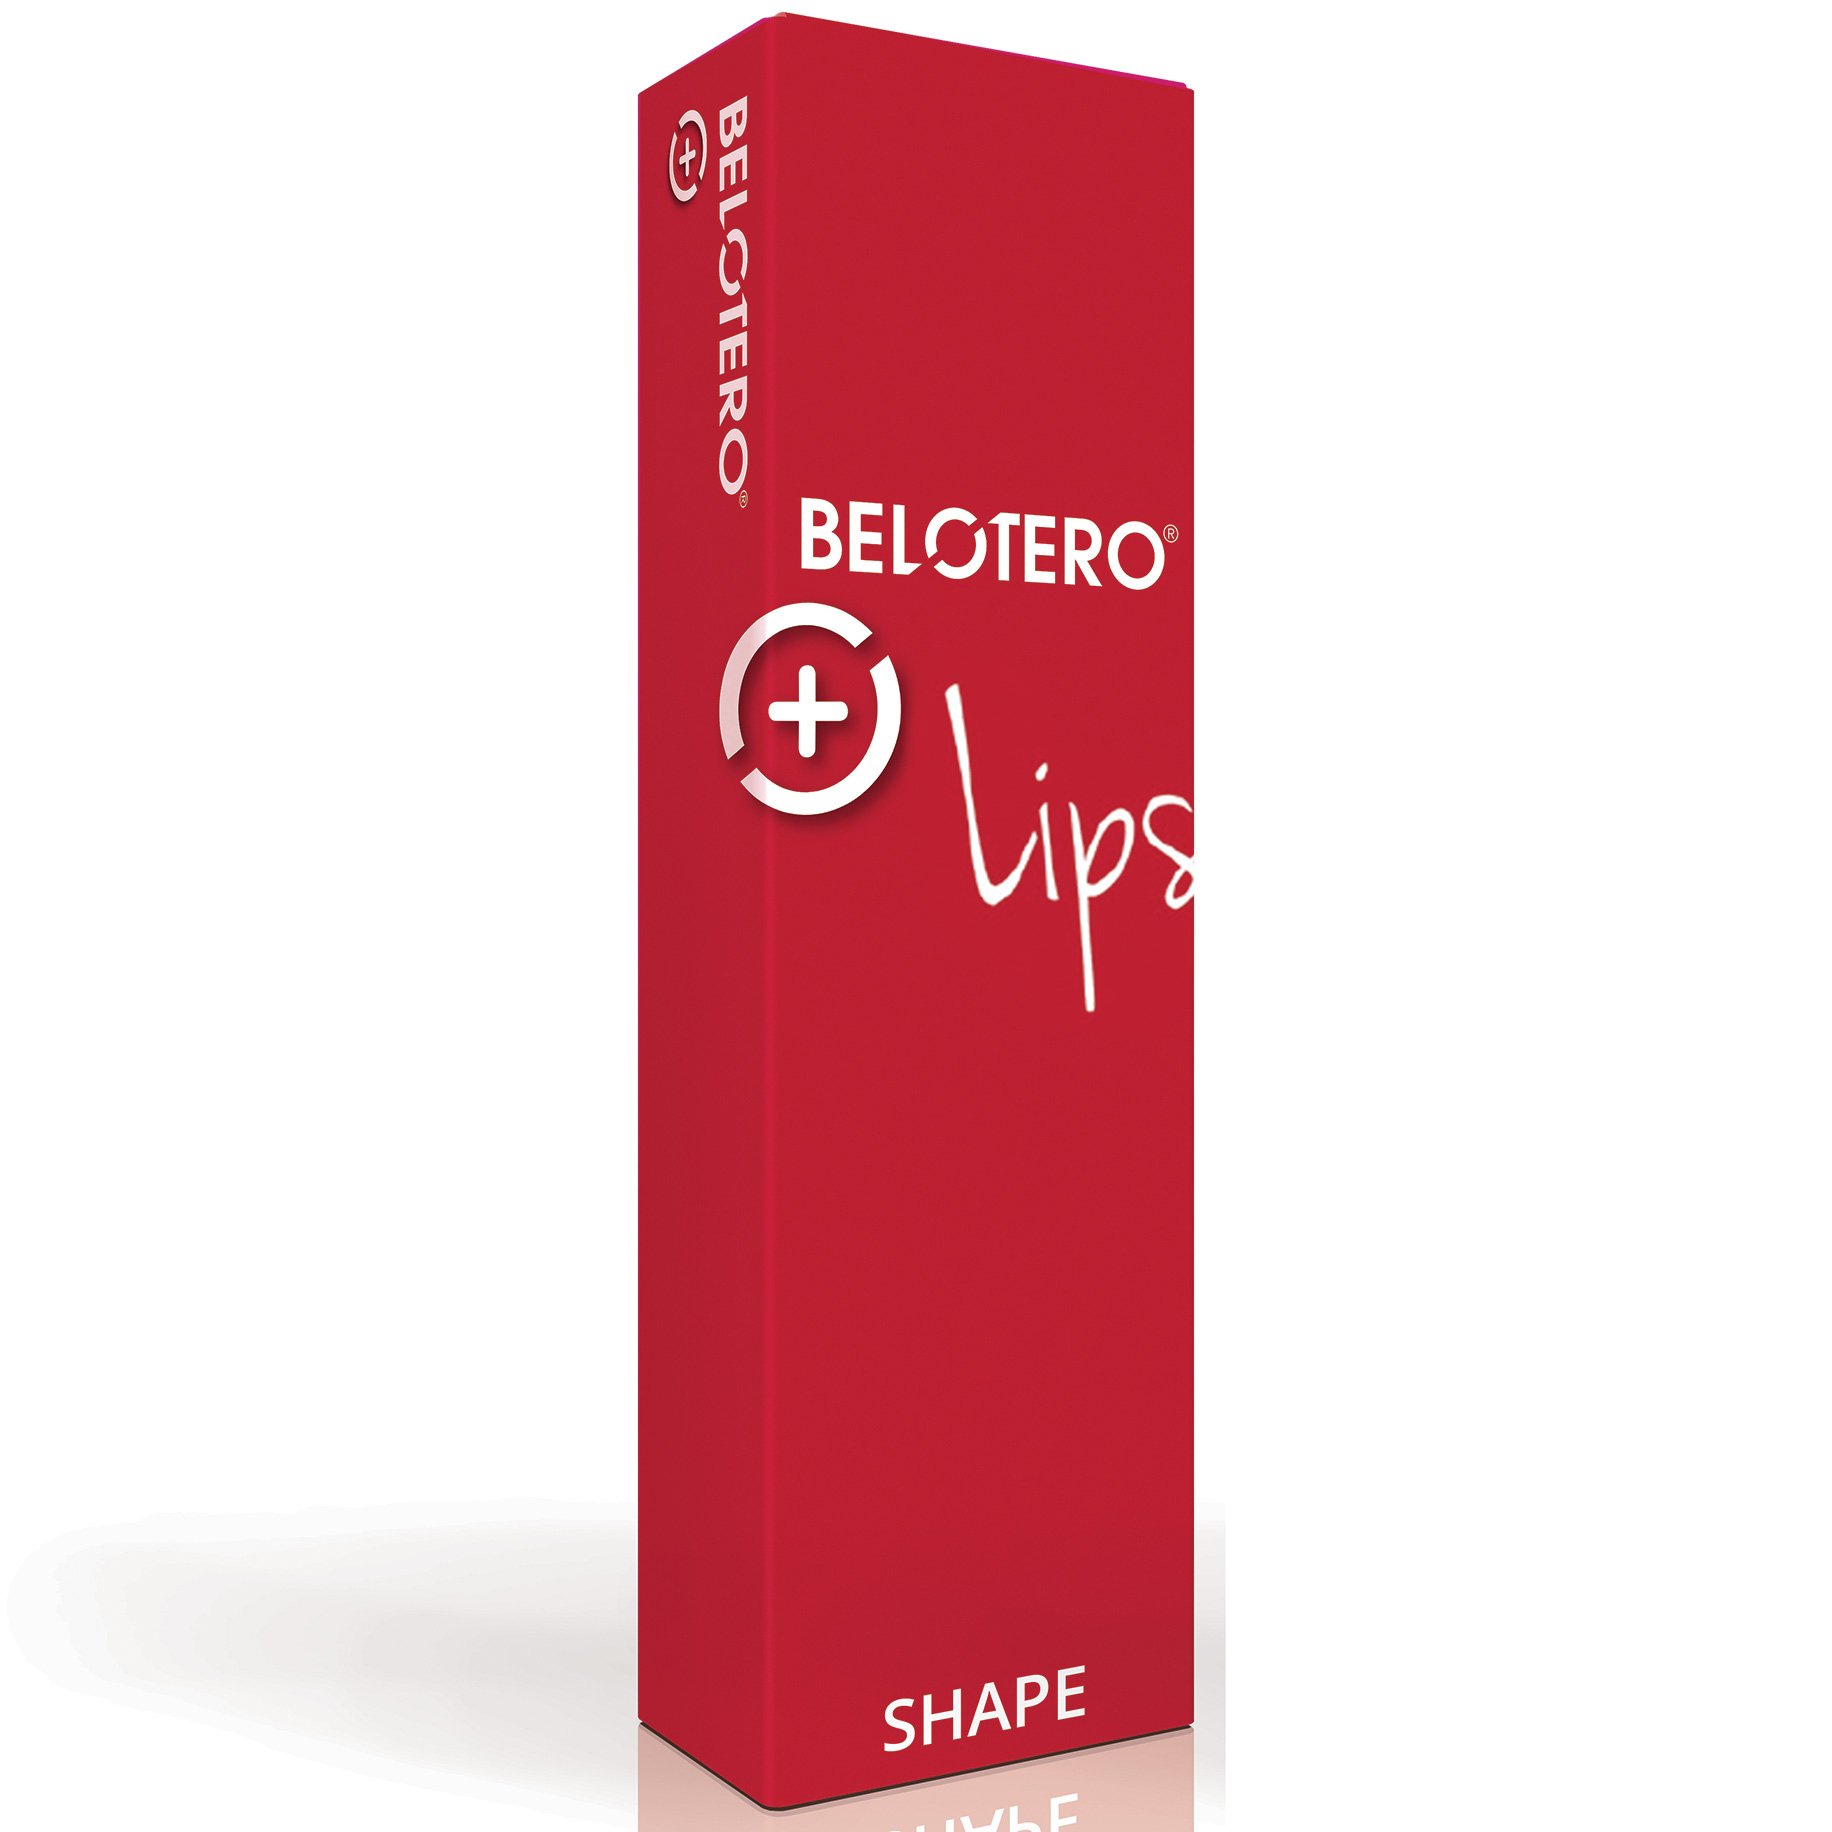 Belotero+ Lips Shape 